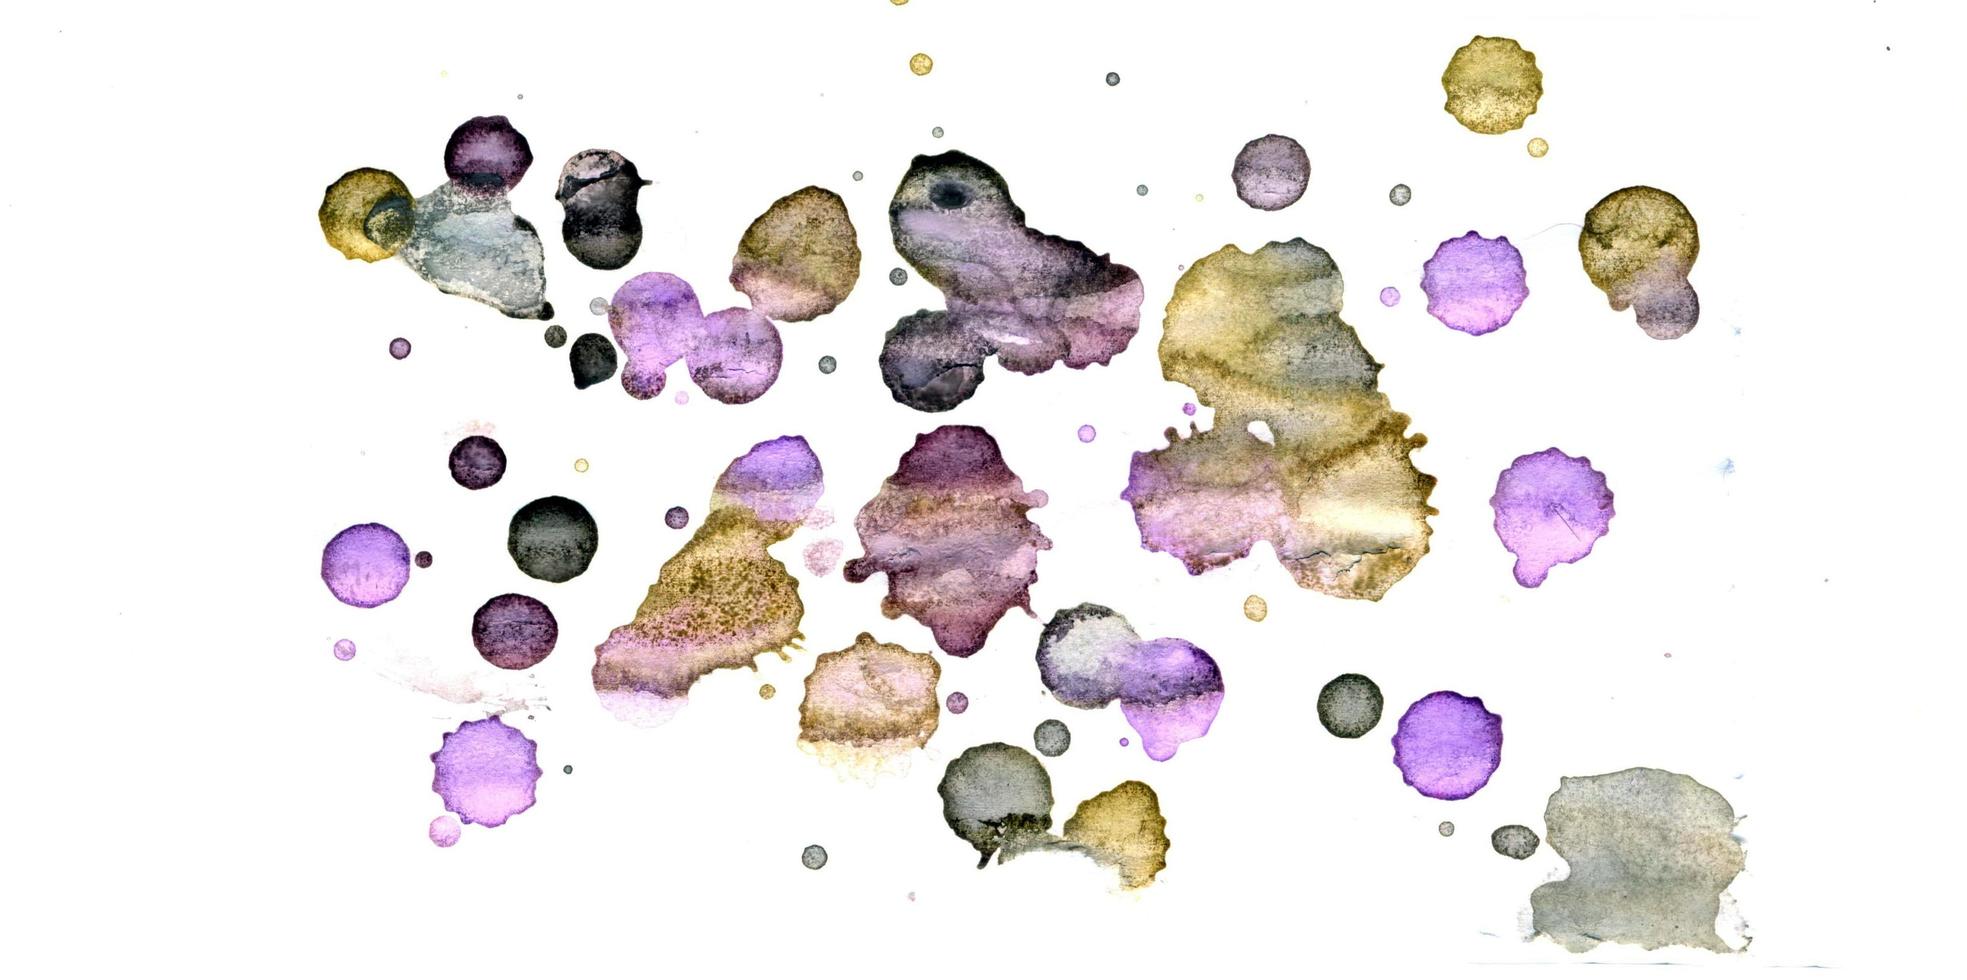 Aquarellillustrationen gezeichnete Farben auf weißem Papierhintergrund foto